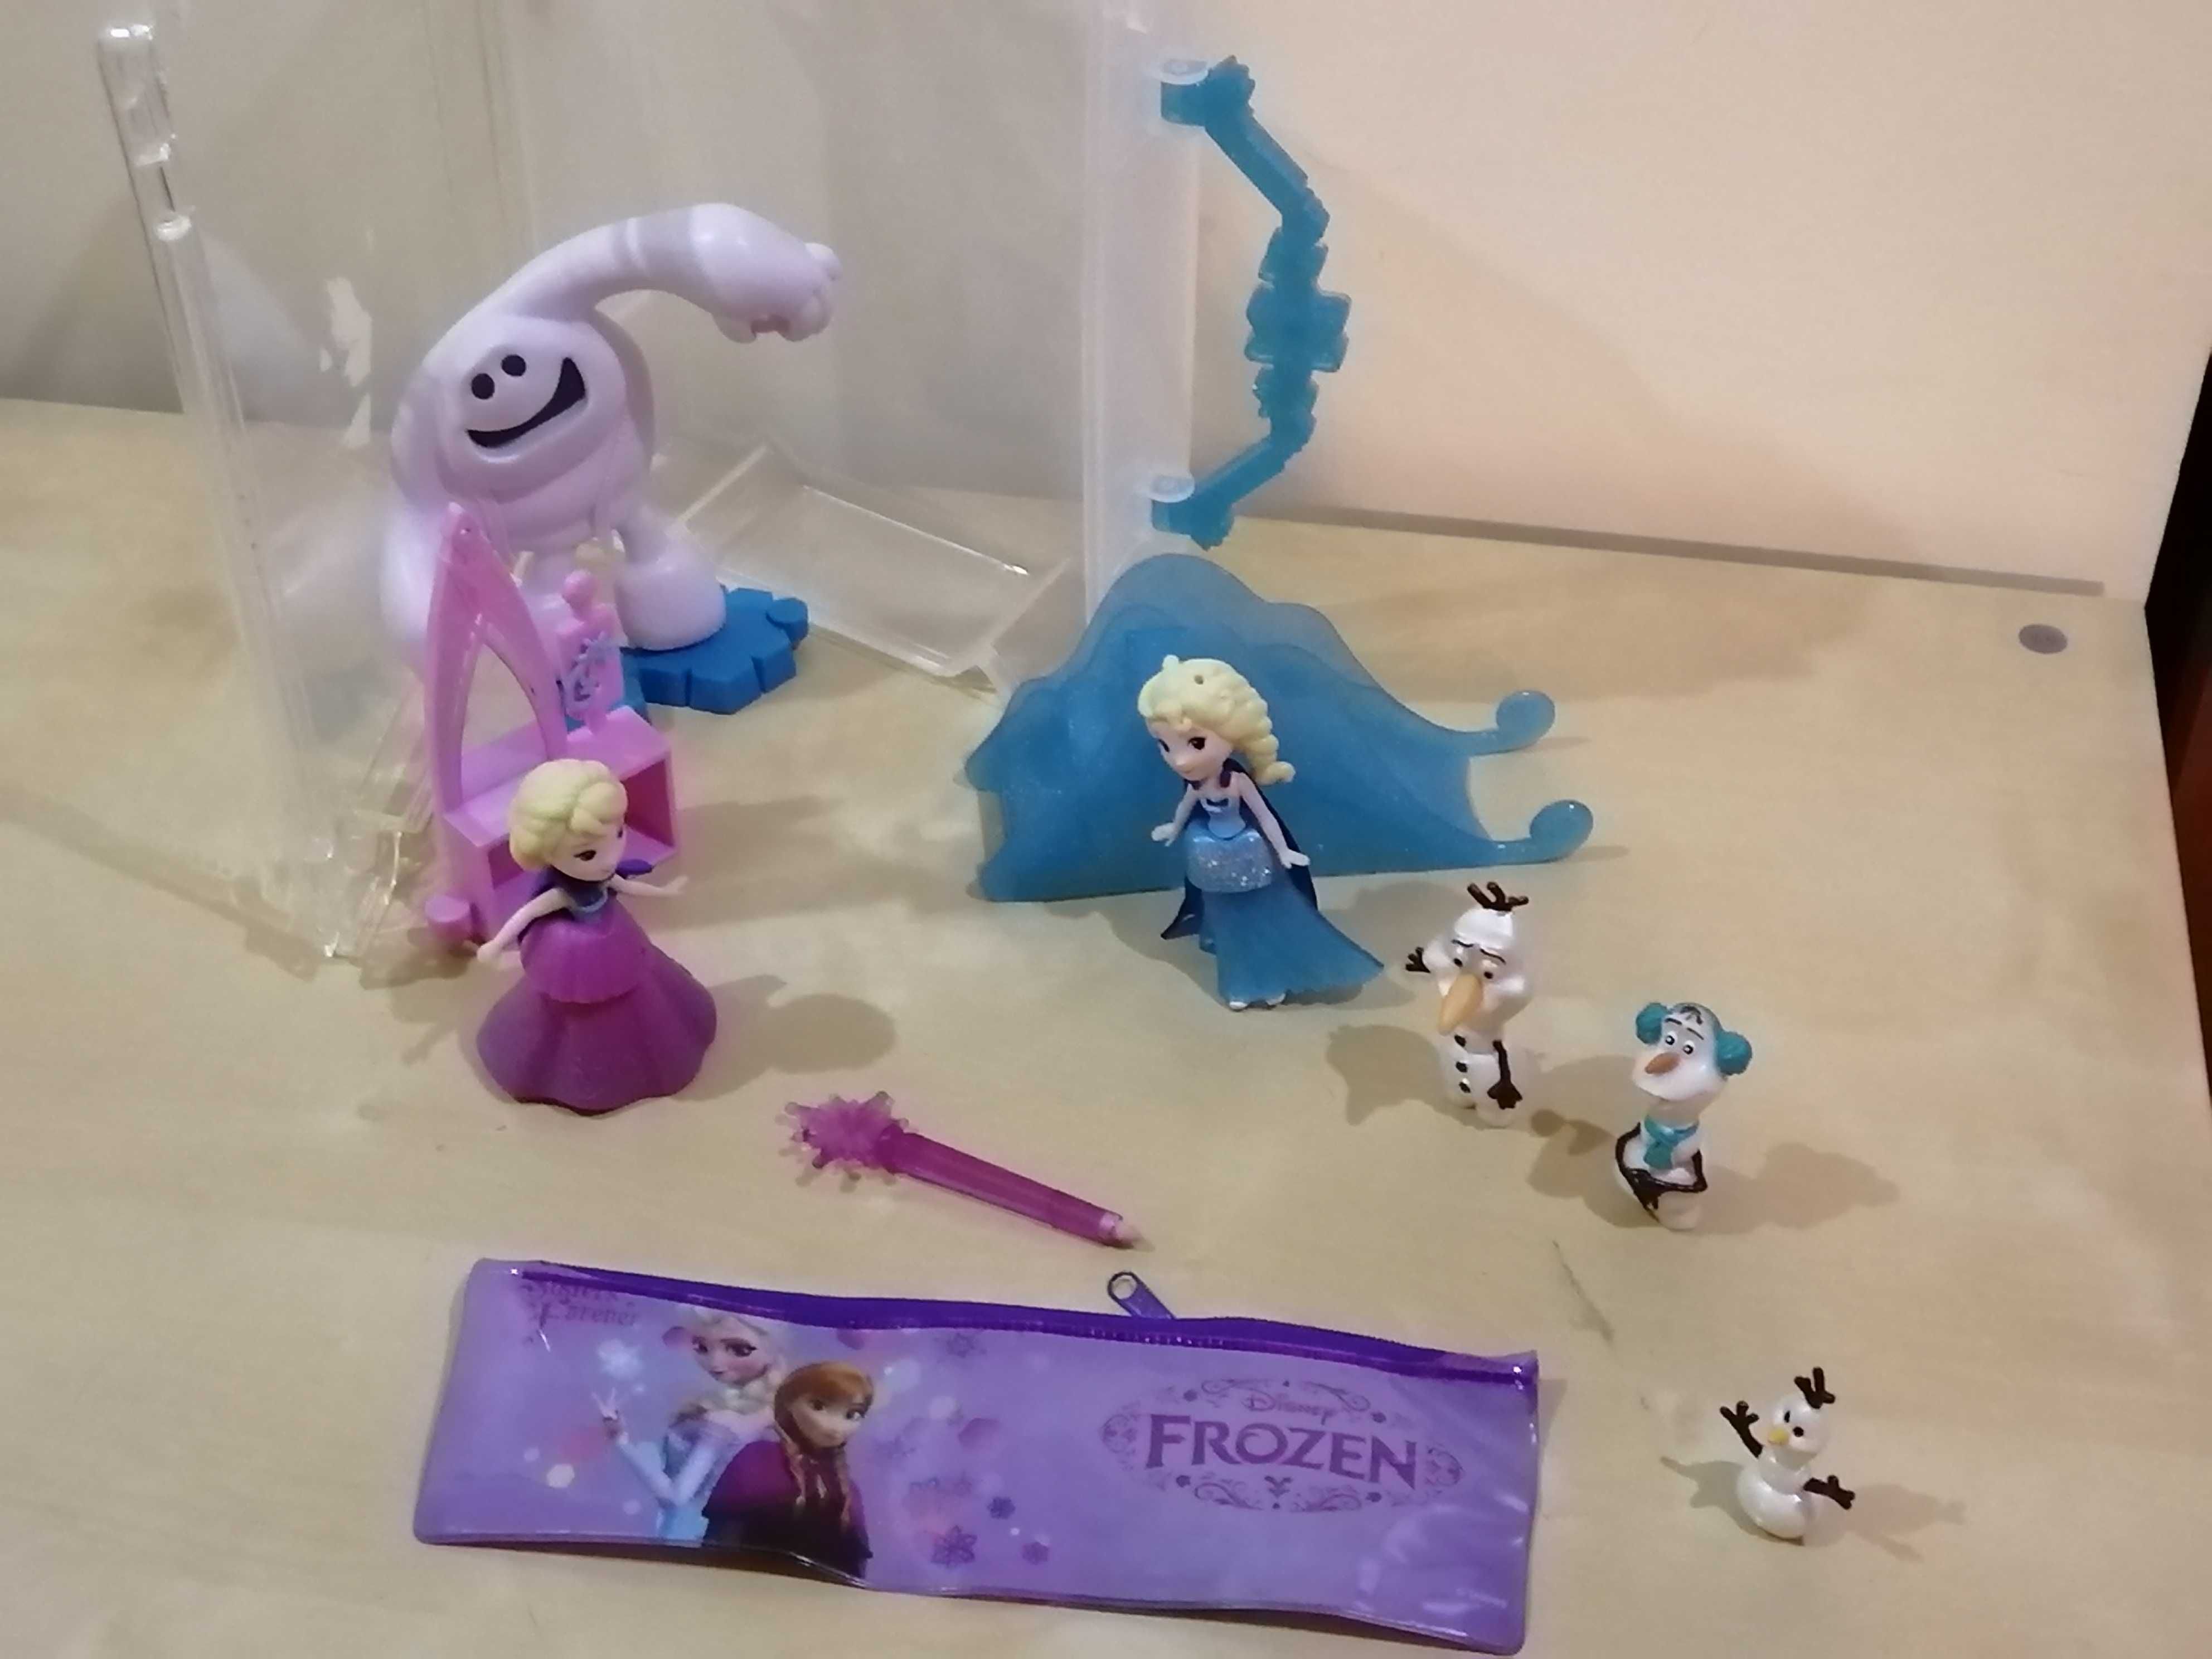 Bonecos Figuras Frozen (Elsa, Ana, Olaf) com malinha